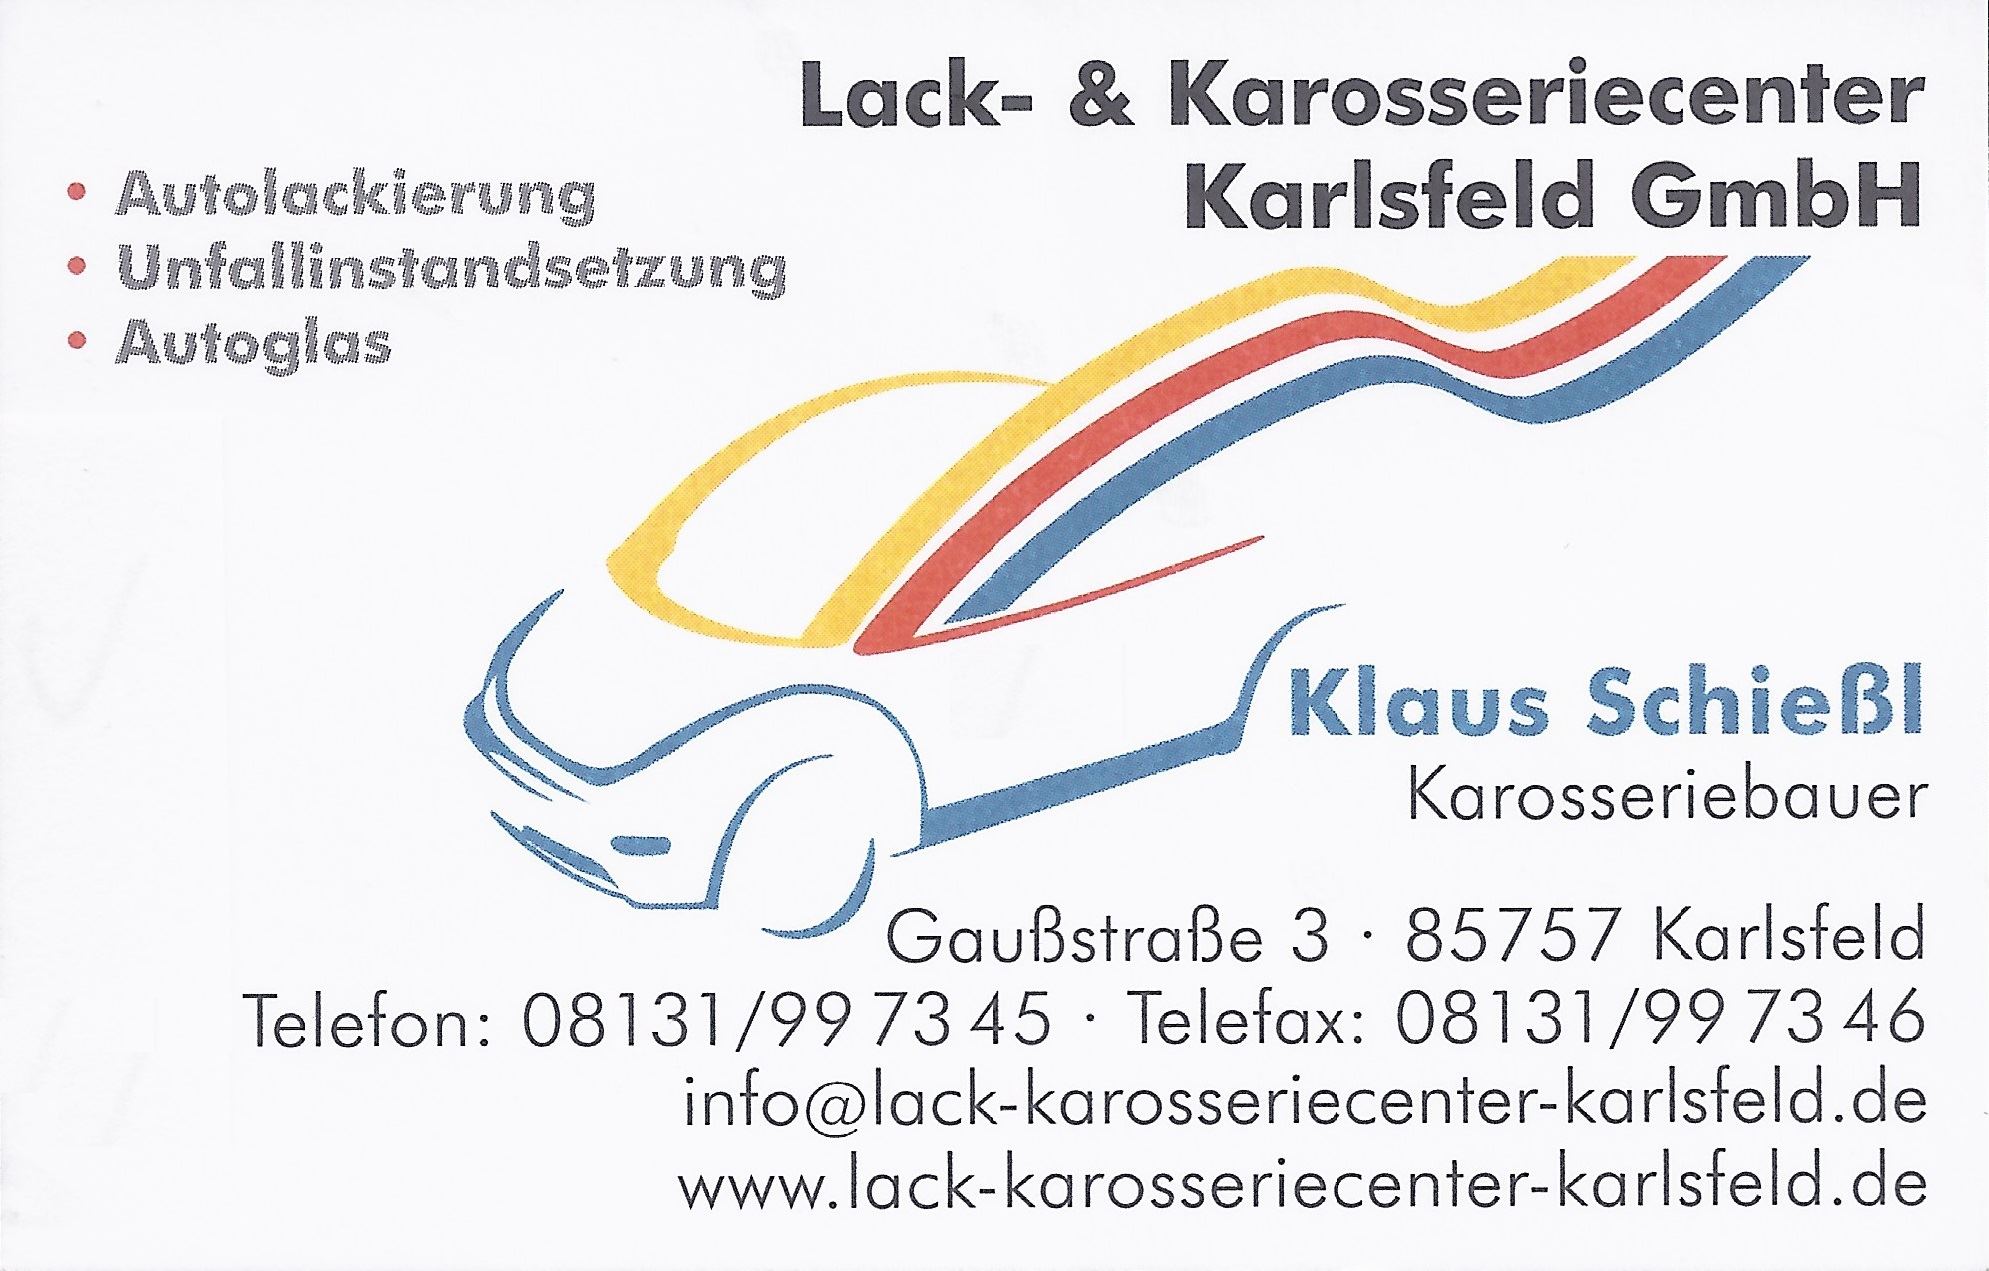 Lack- und Karosseriecenter Karlsfeld